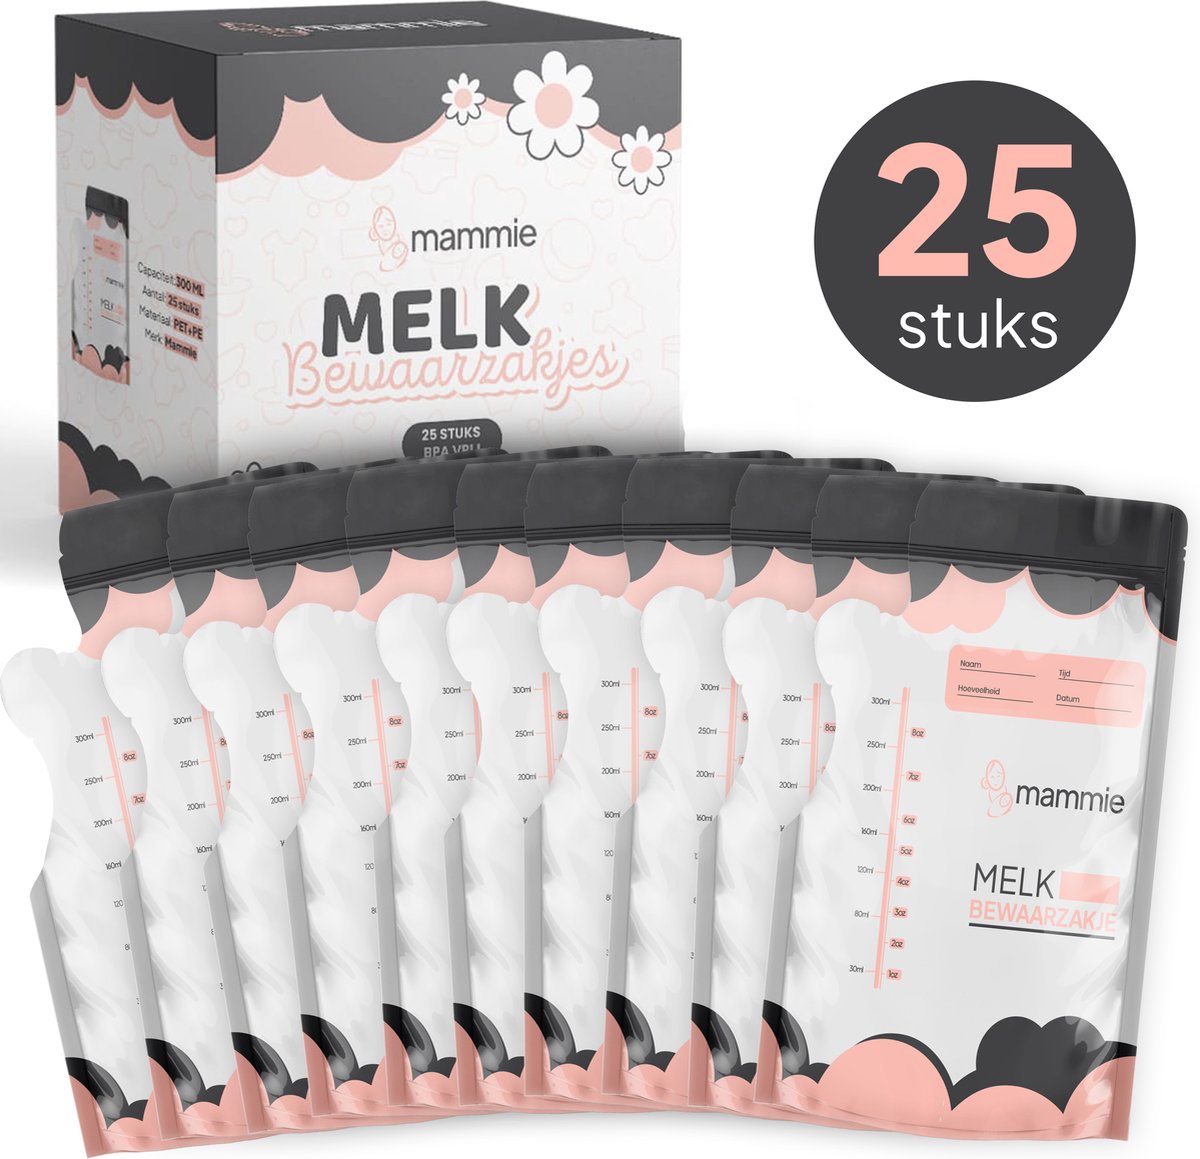 Mammie Moedermelk Bewaarzakjes met Schenktuit - Extra Groot - 300 ML - 25 stuks - Borstvoeding Bewaarzakje - BPA vrij - Mammie